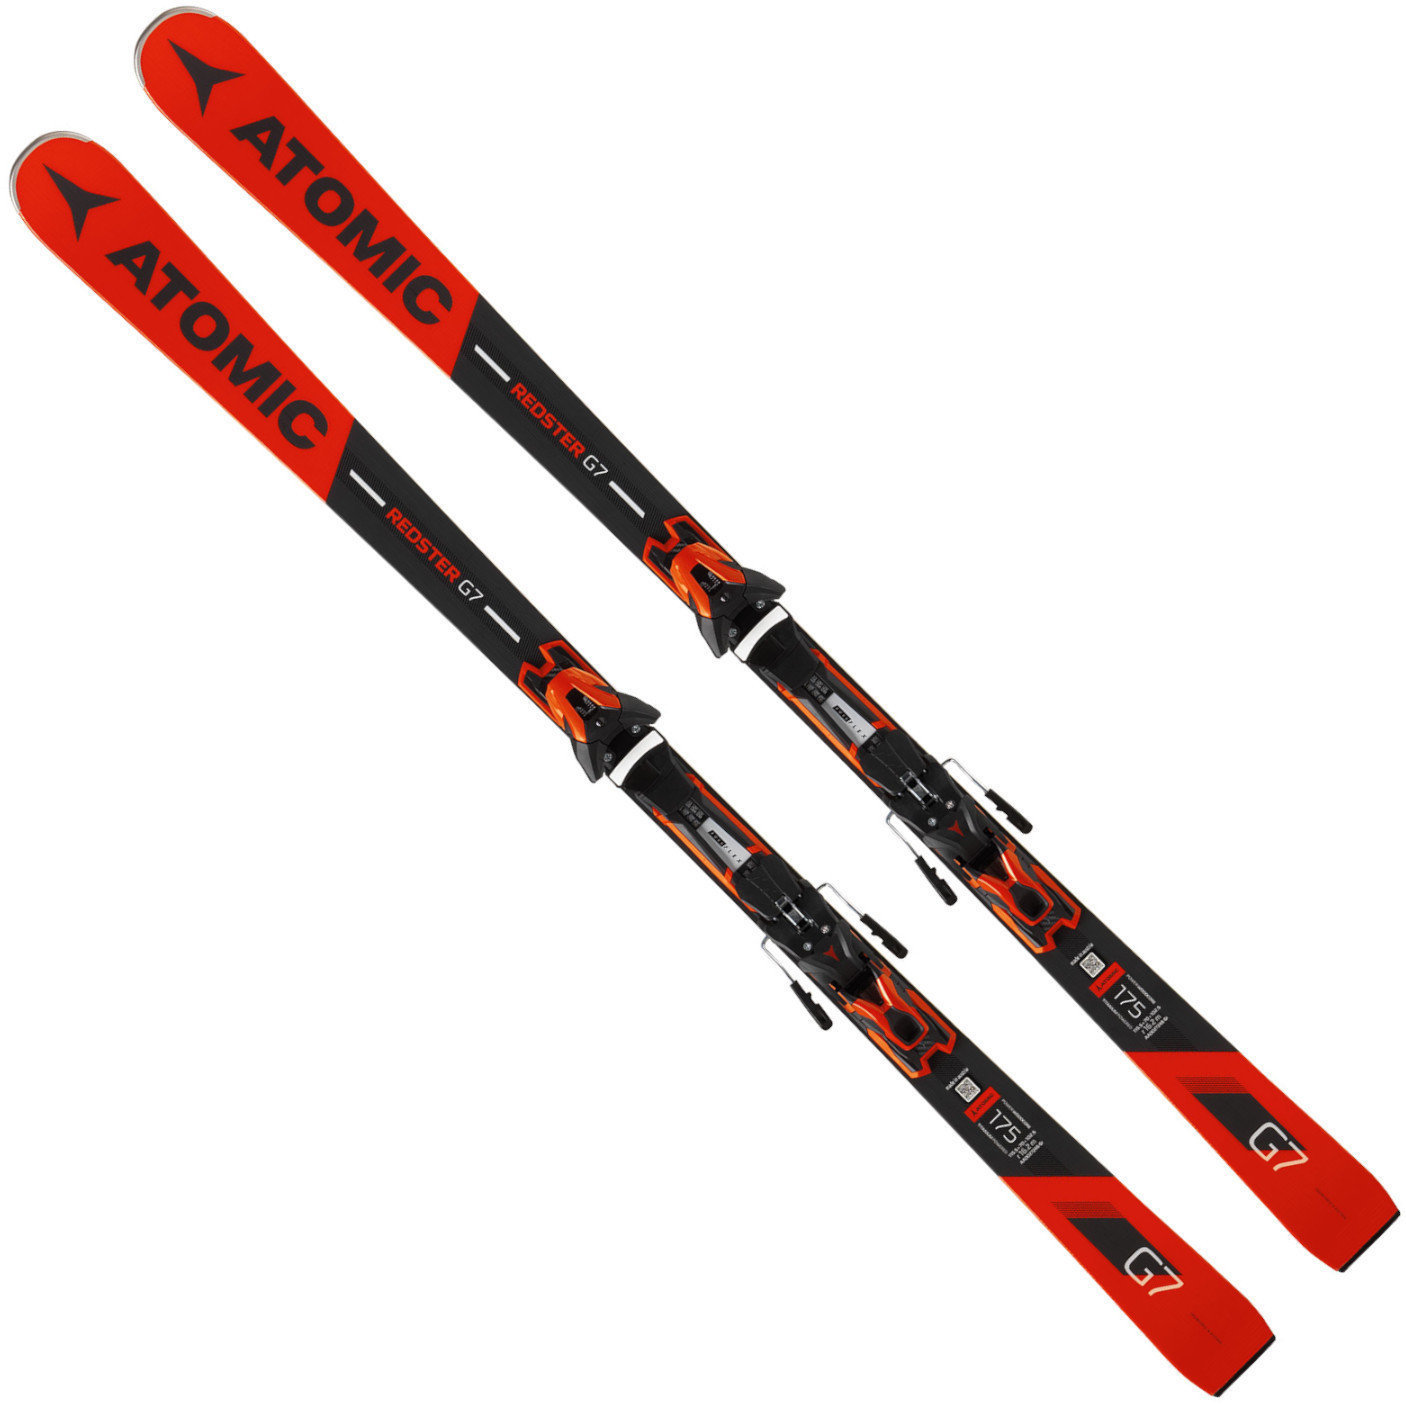 Esquís Atomic Redster G7 + FT 12 GW 175 18/19 skis